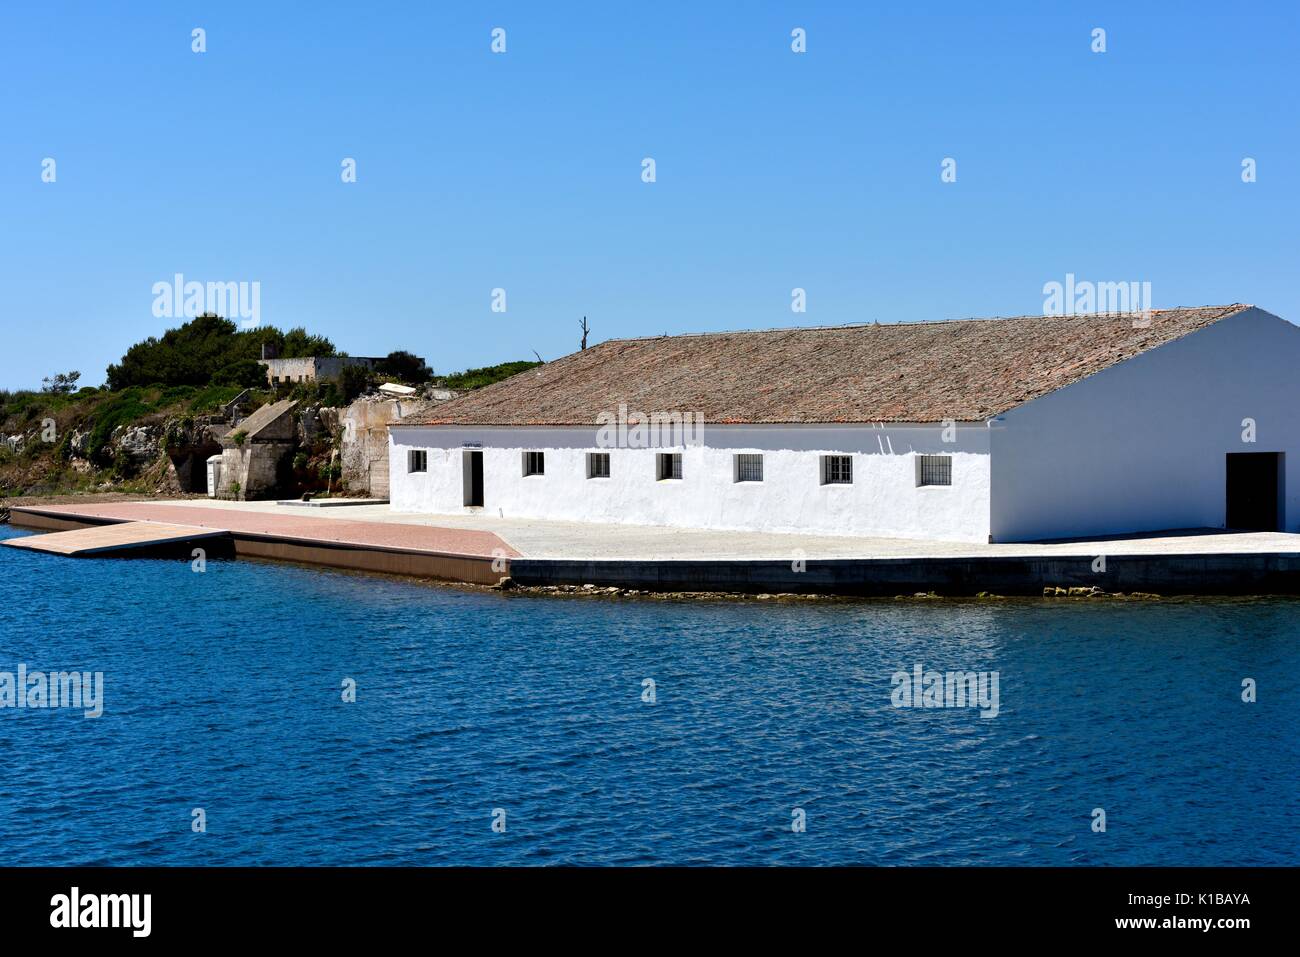 illa plana flat island quarantine island Mahon Menorca Minorca Stock Photo